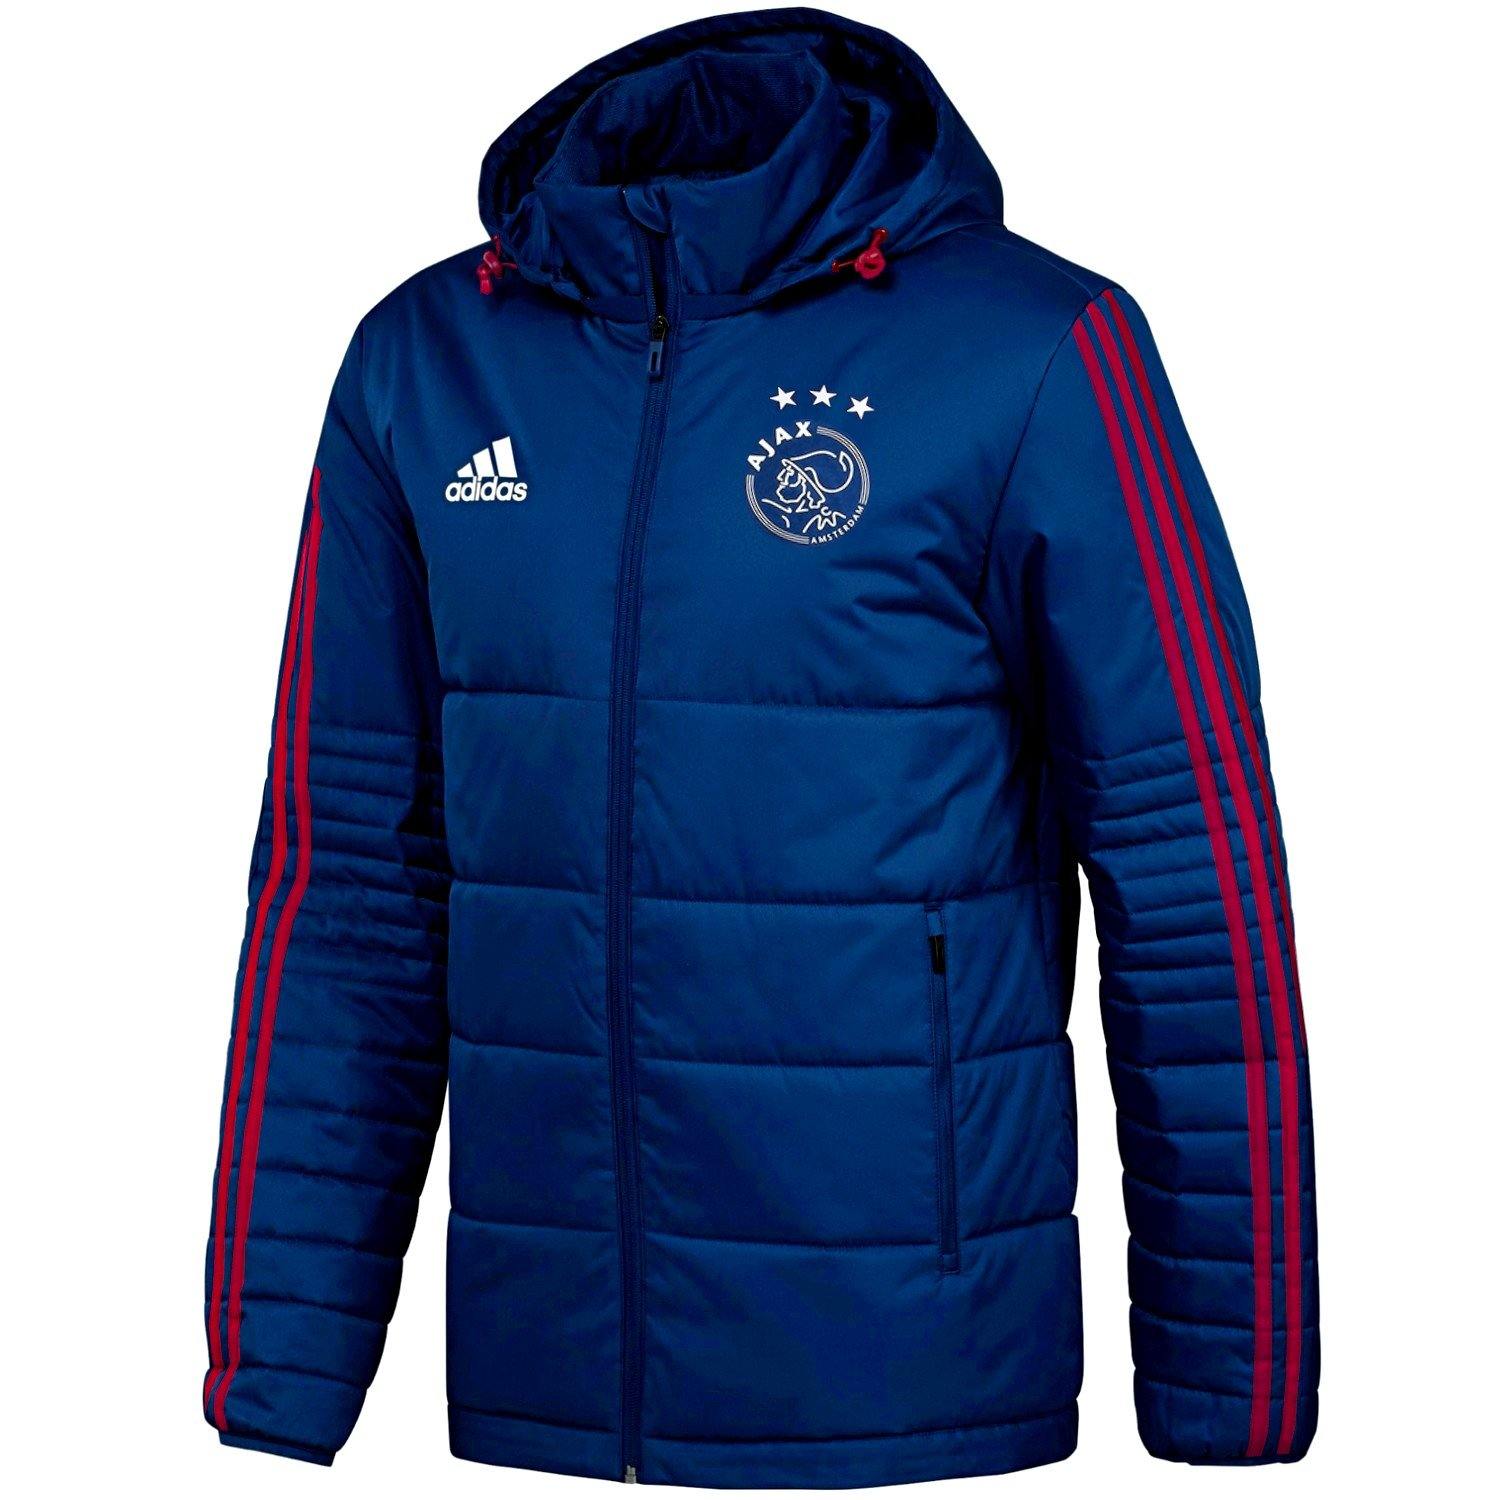 campus samenwerken samenvoegen Ajax winter training bench soccer jacket 2018 - Adidas –  SoccerTracksuits.com